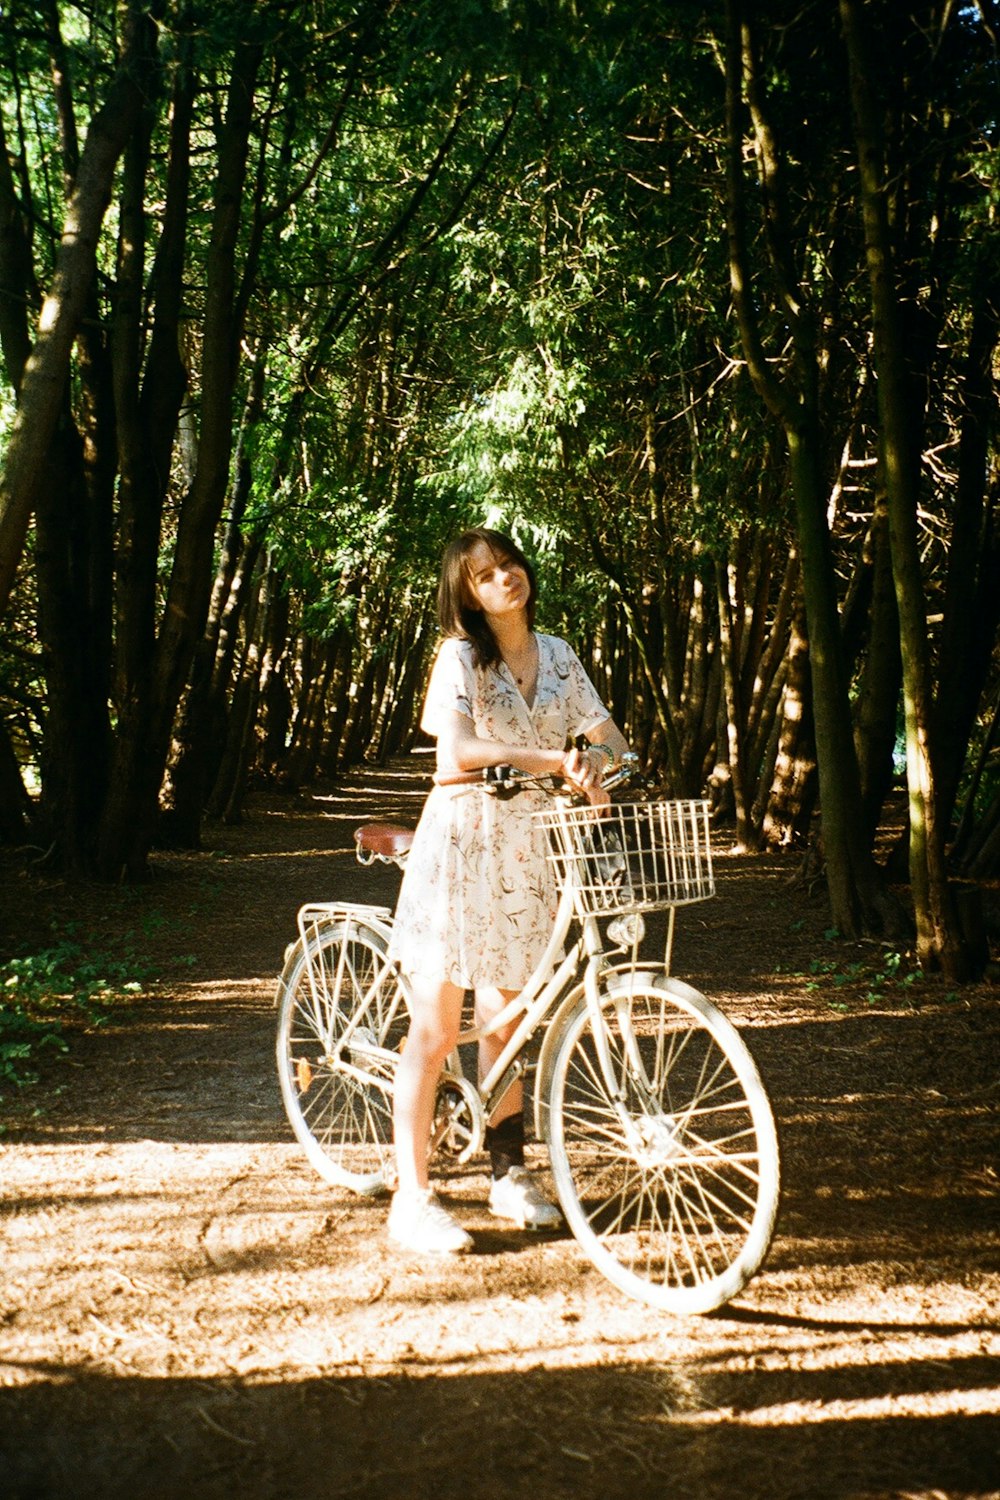 Una mujer parada junto a una bicicleta en un camino de tierra